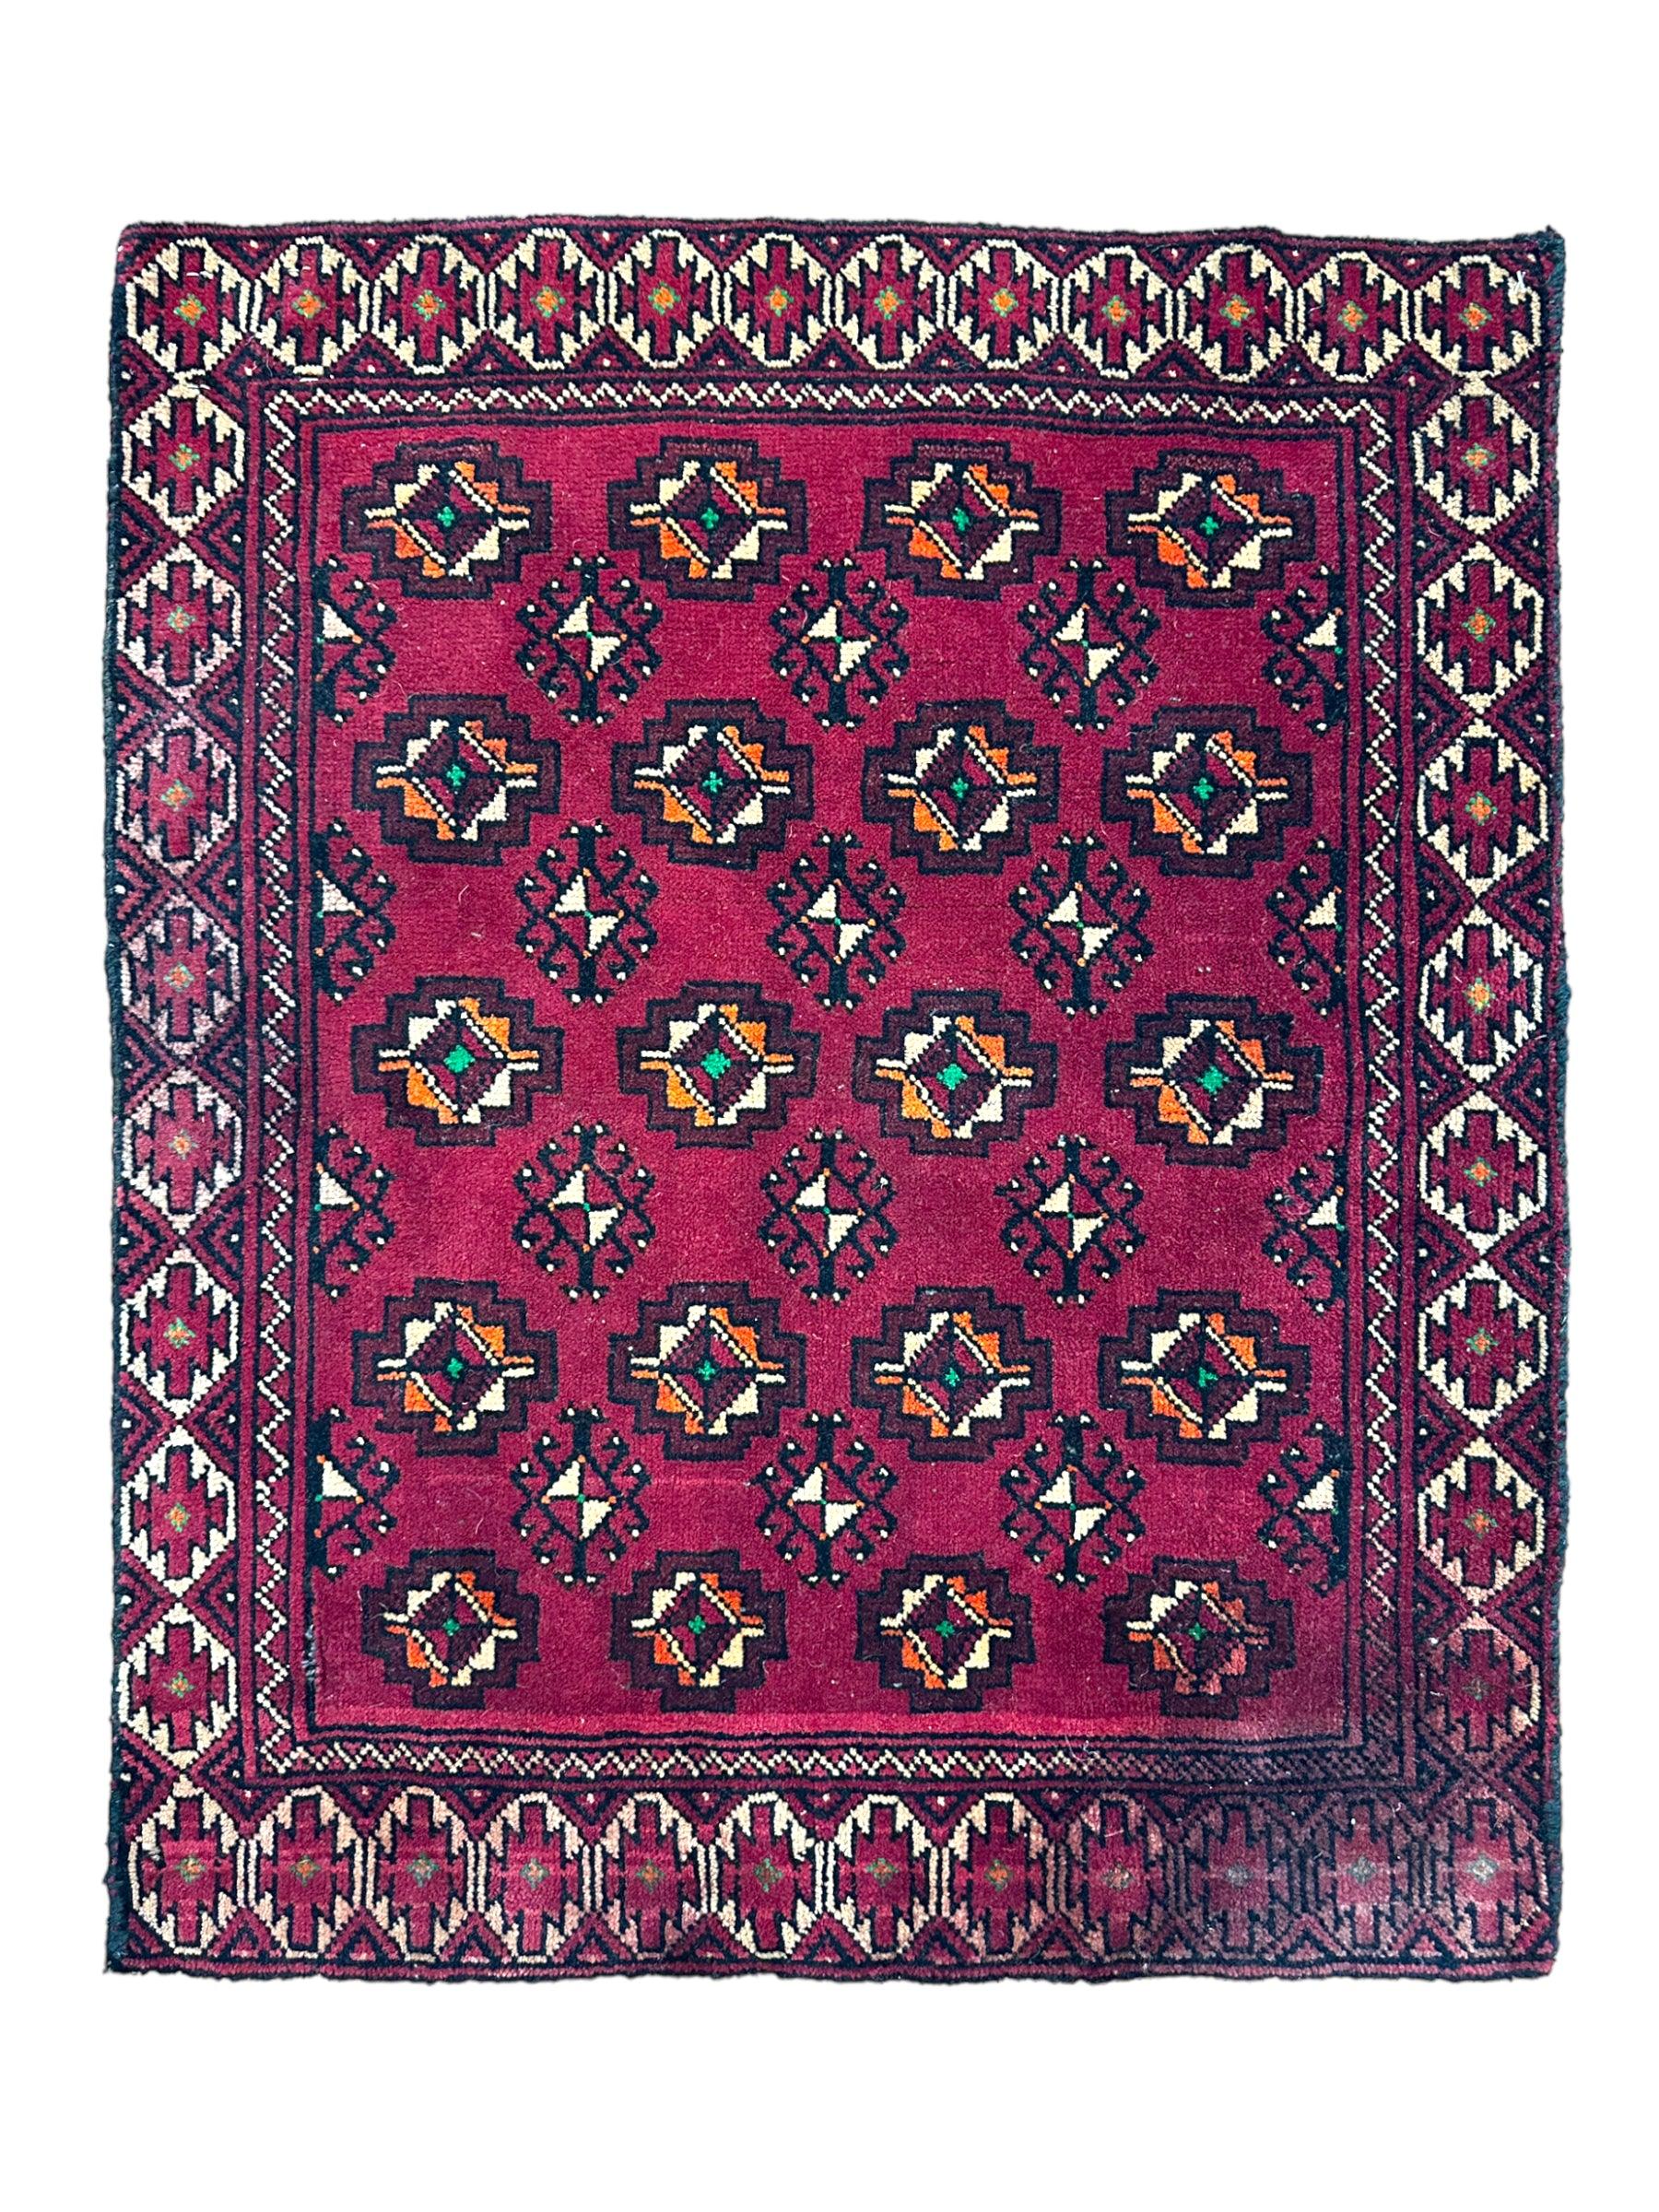 Vintage Tribal Afghani Wool Rug 2’7” x 2’2”